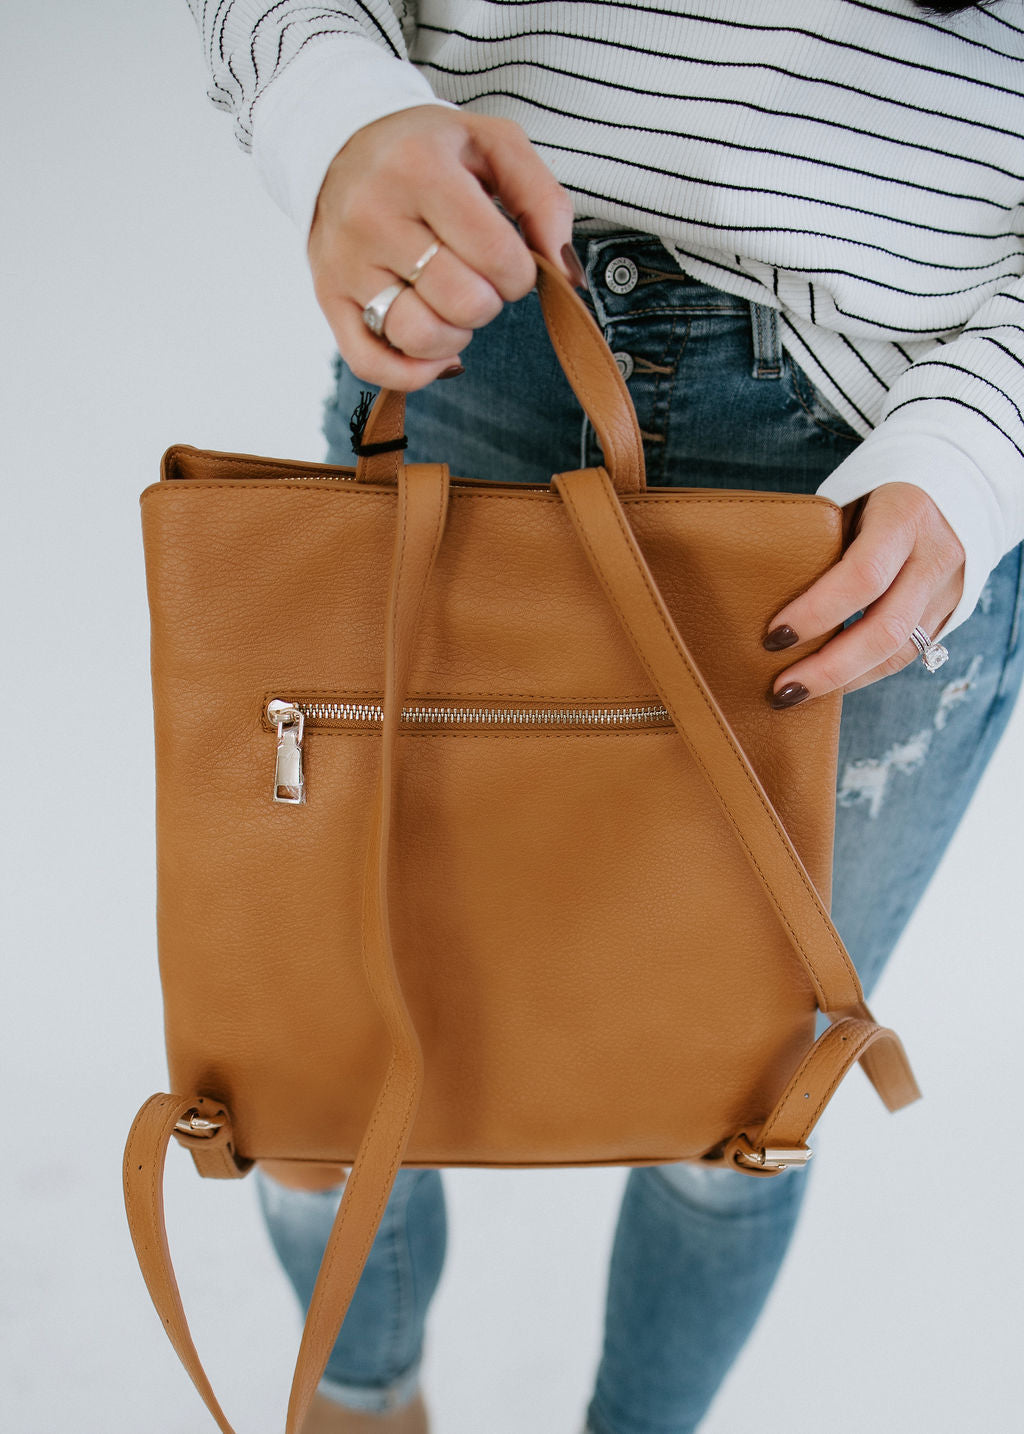 Tulum Backpack - Moda Luxe